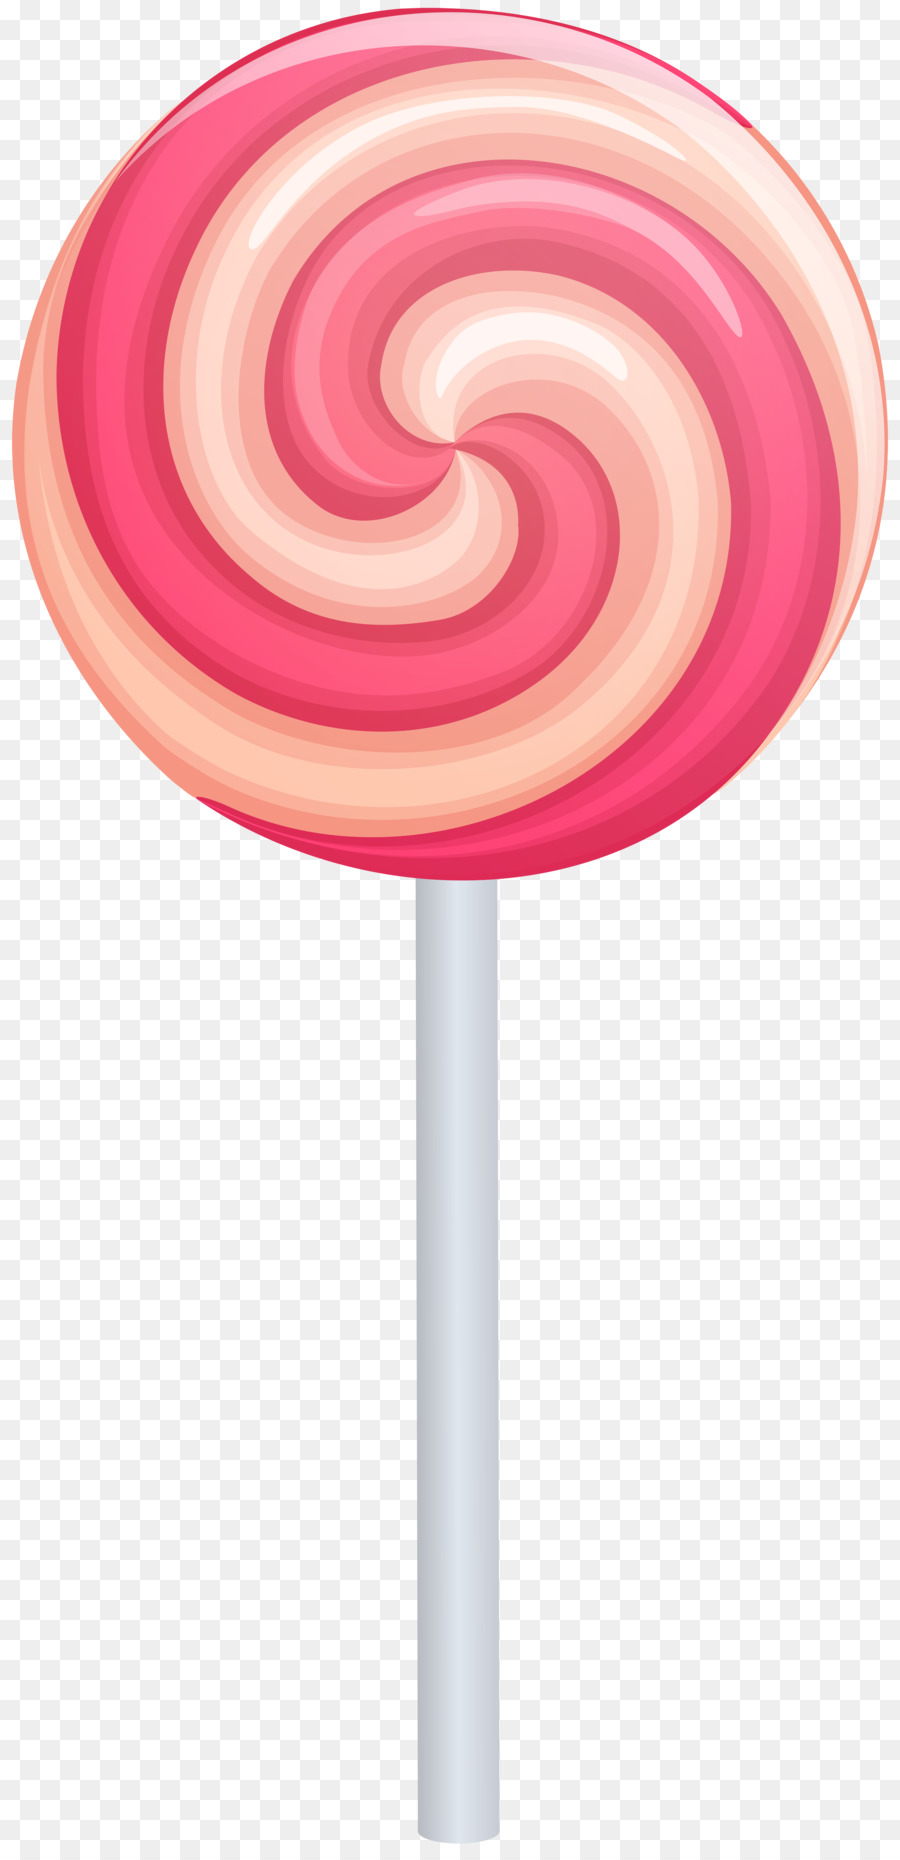 Lollipop Cartoon clipart.